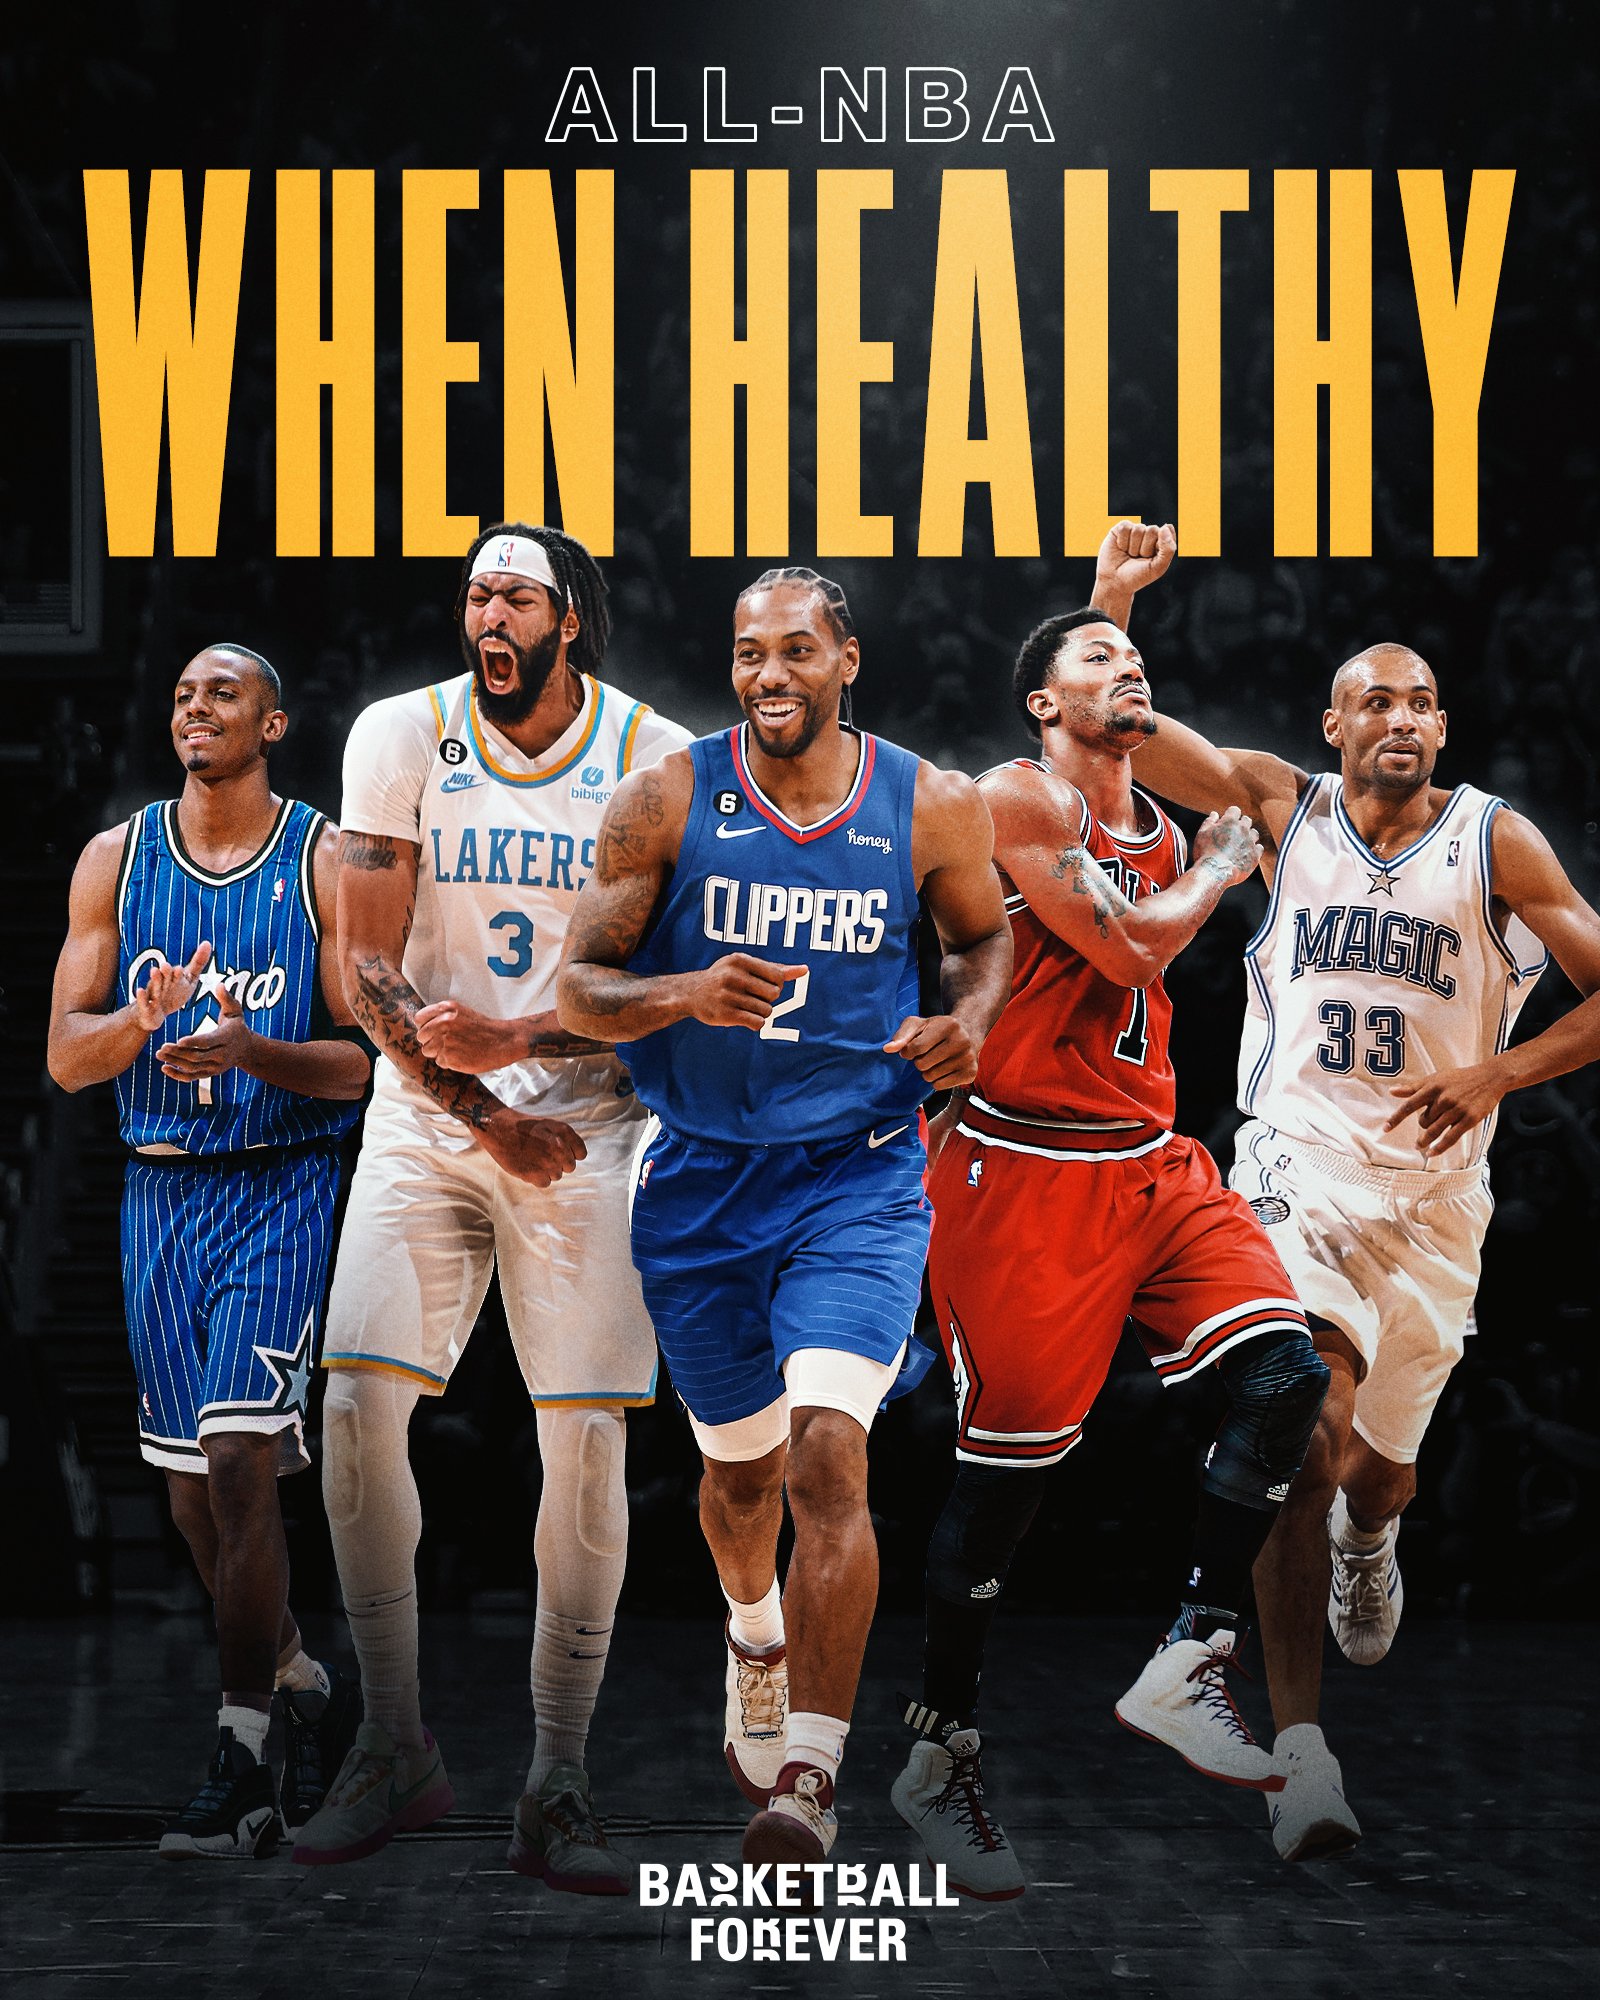 Basketball Forever on Twitter: "All-NBA Healthy 🔸 Penny Hardaway 🔸 Anthony Davis 🔸 Kawhi Leonard 🔸 Derrick Rose 🔸 Grant Hill https://t.co/B7lG6qpjkY" Twitter